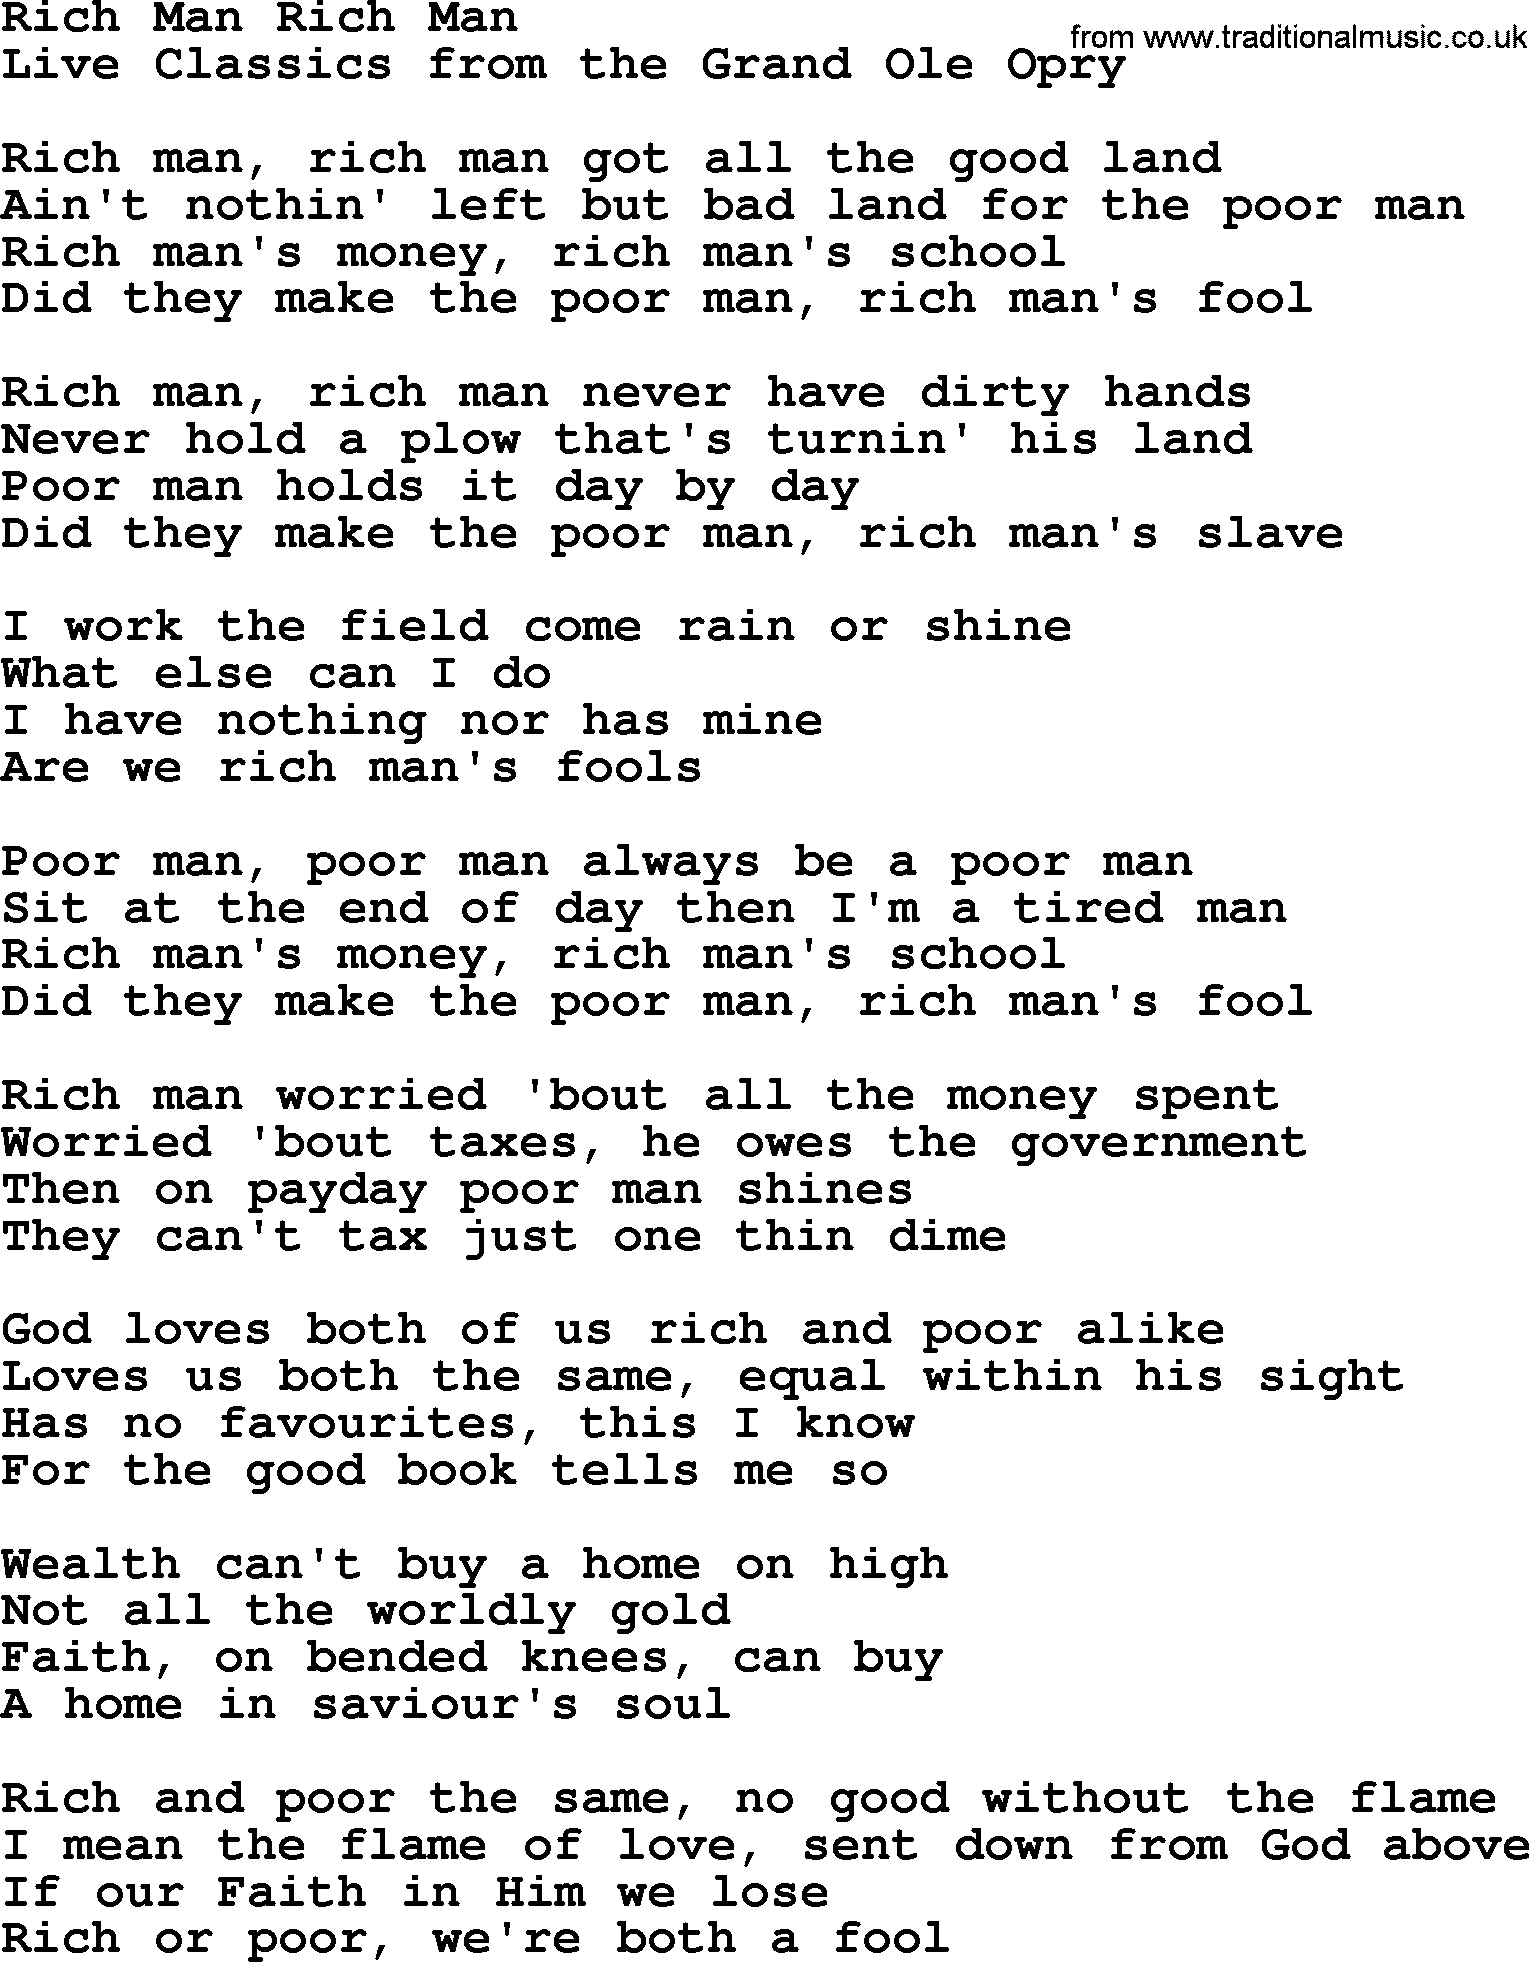 Marty Robbins song: Rich Man Rich Man, lyrics